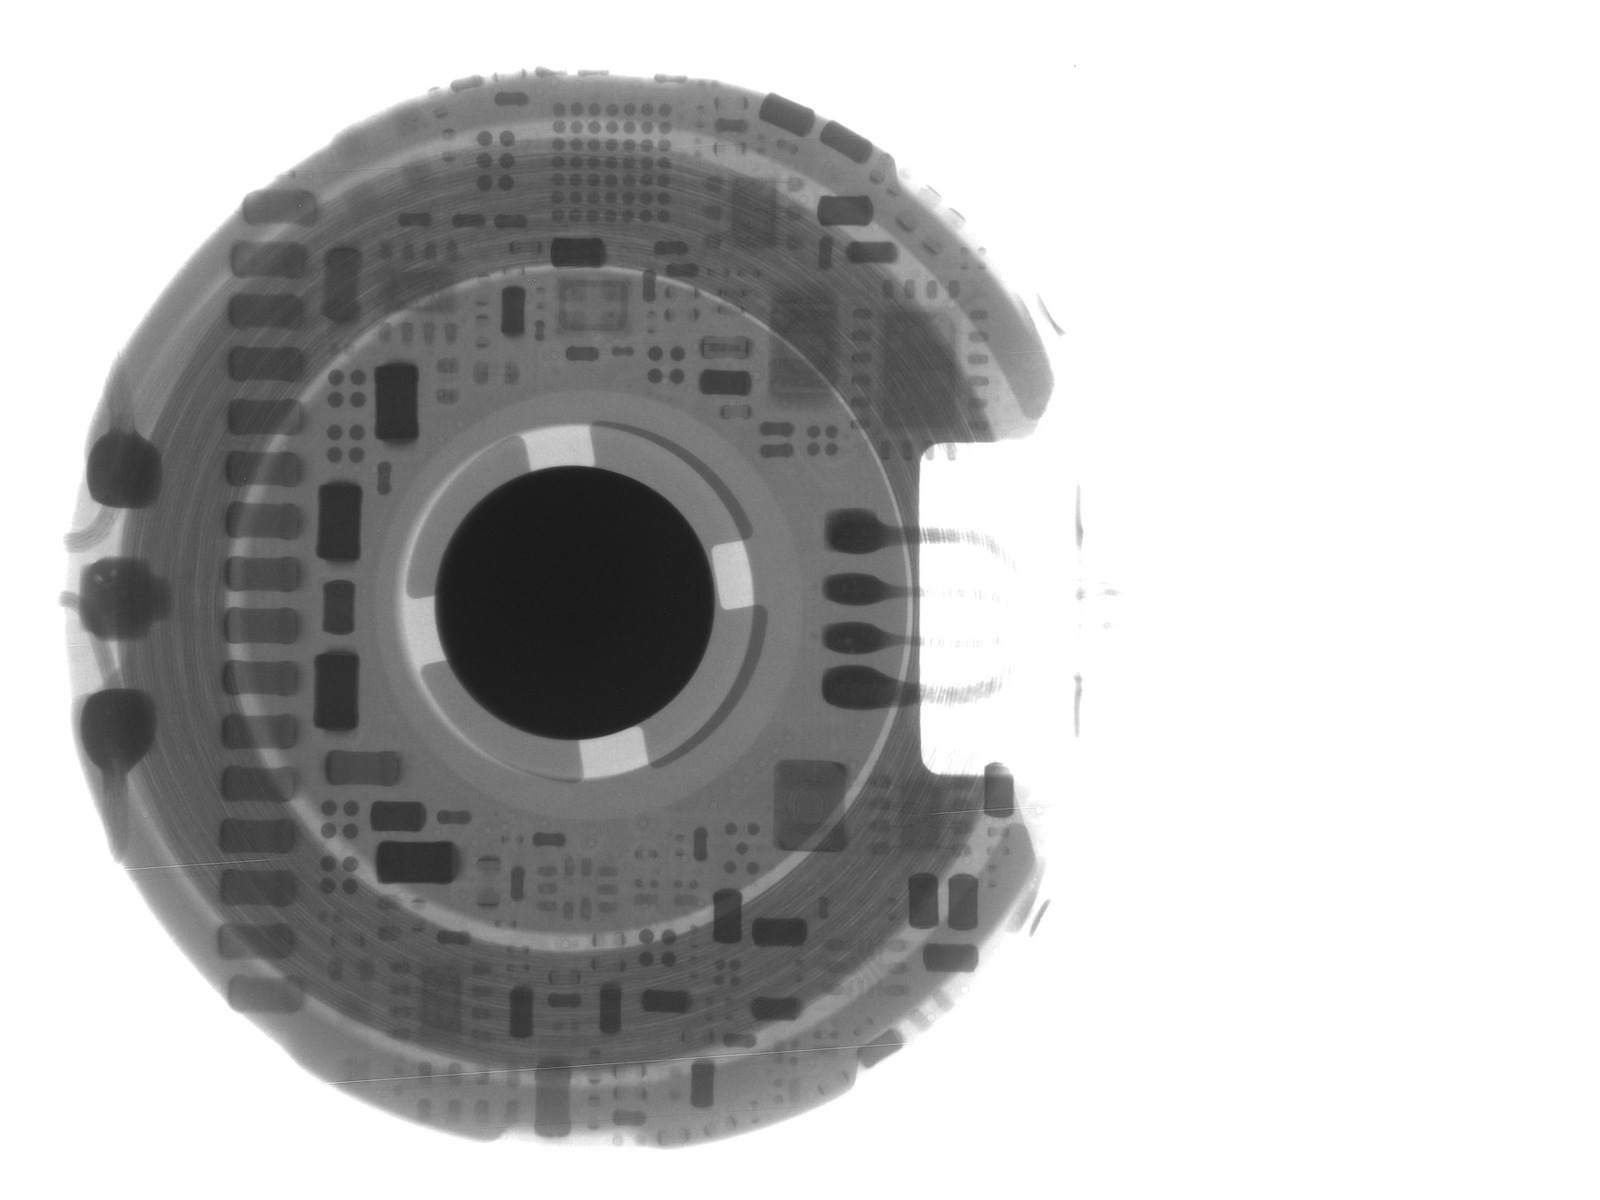 chip S1 Apple Watch escaneado con rayos X 2 - iDevice.ro